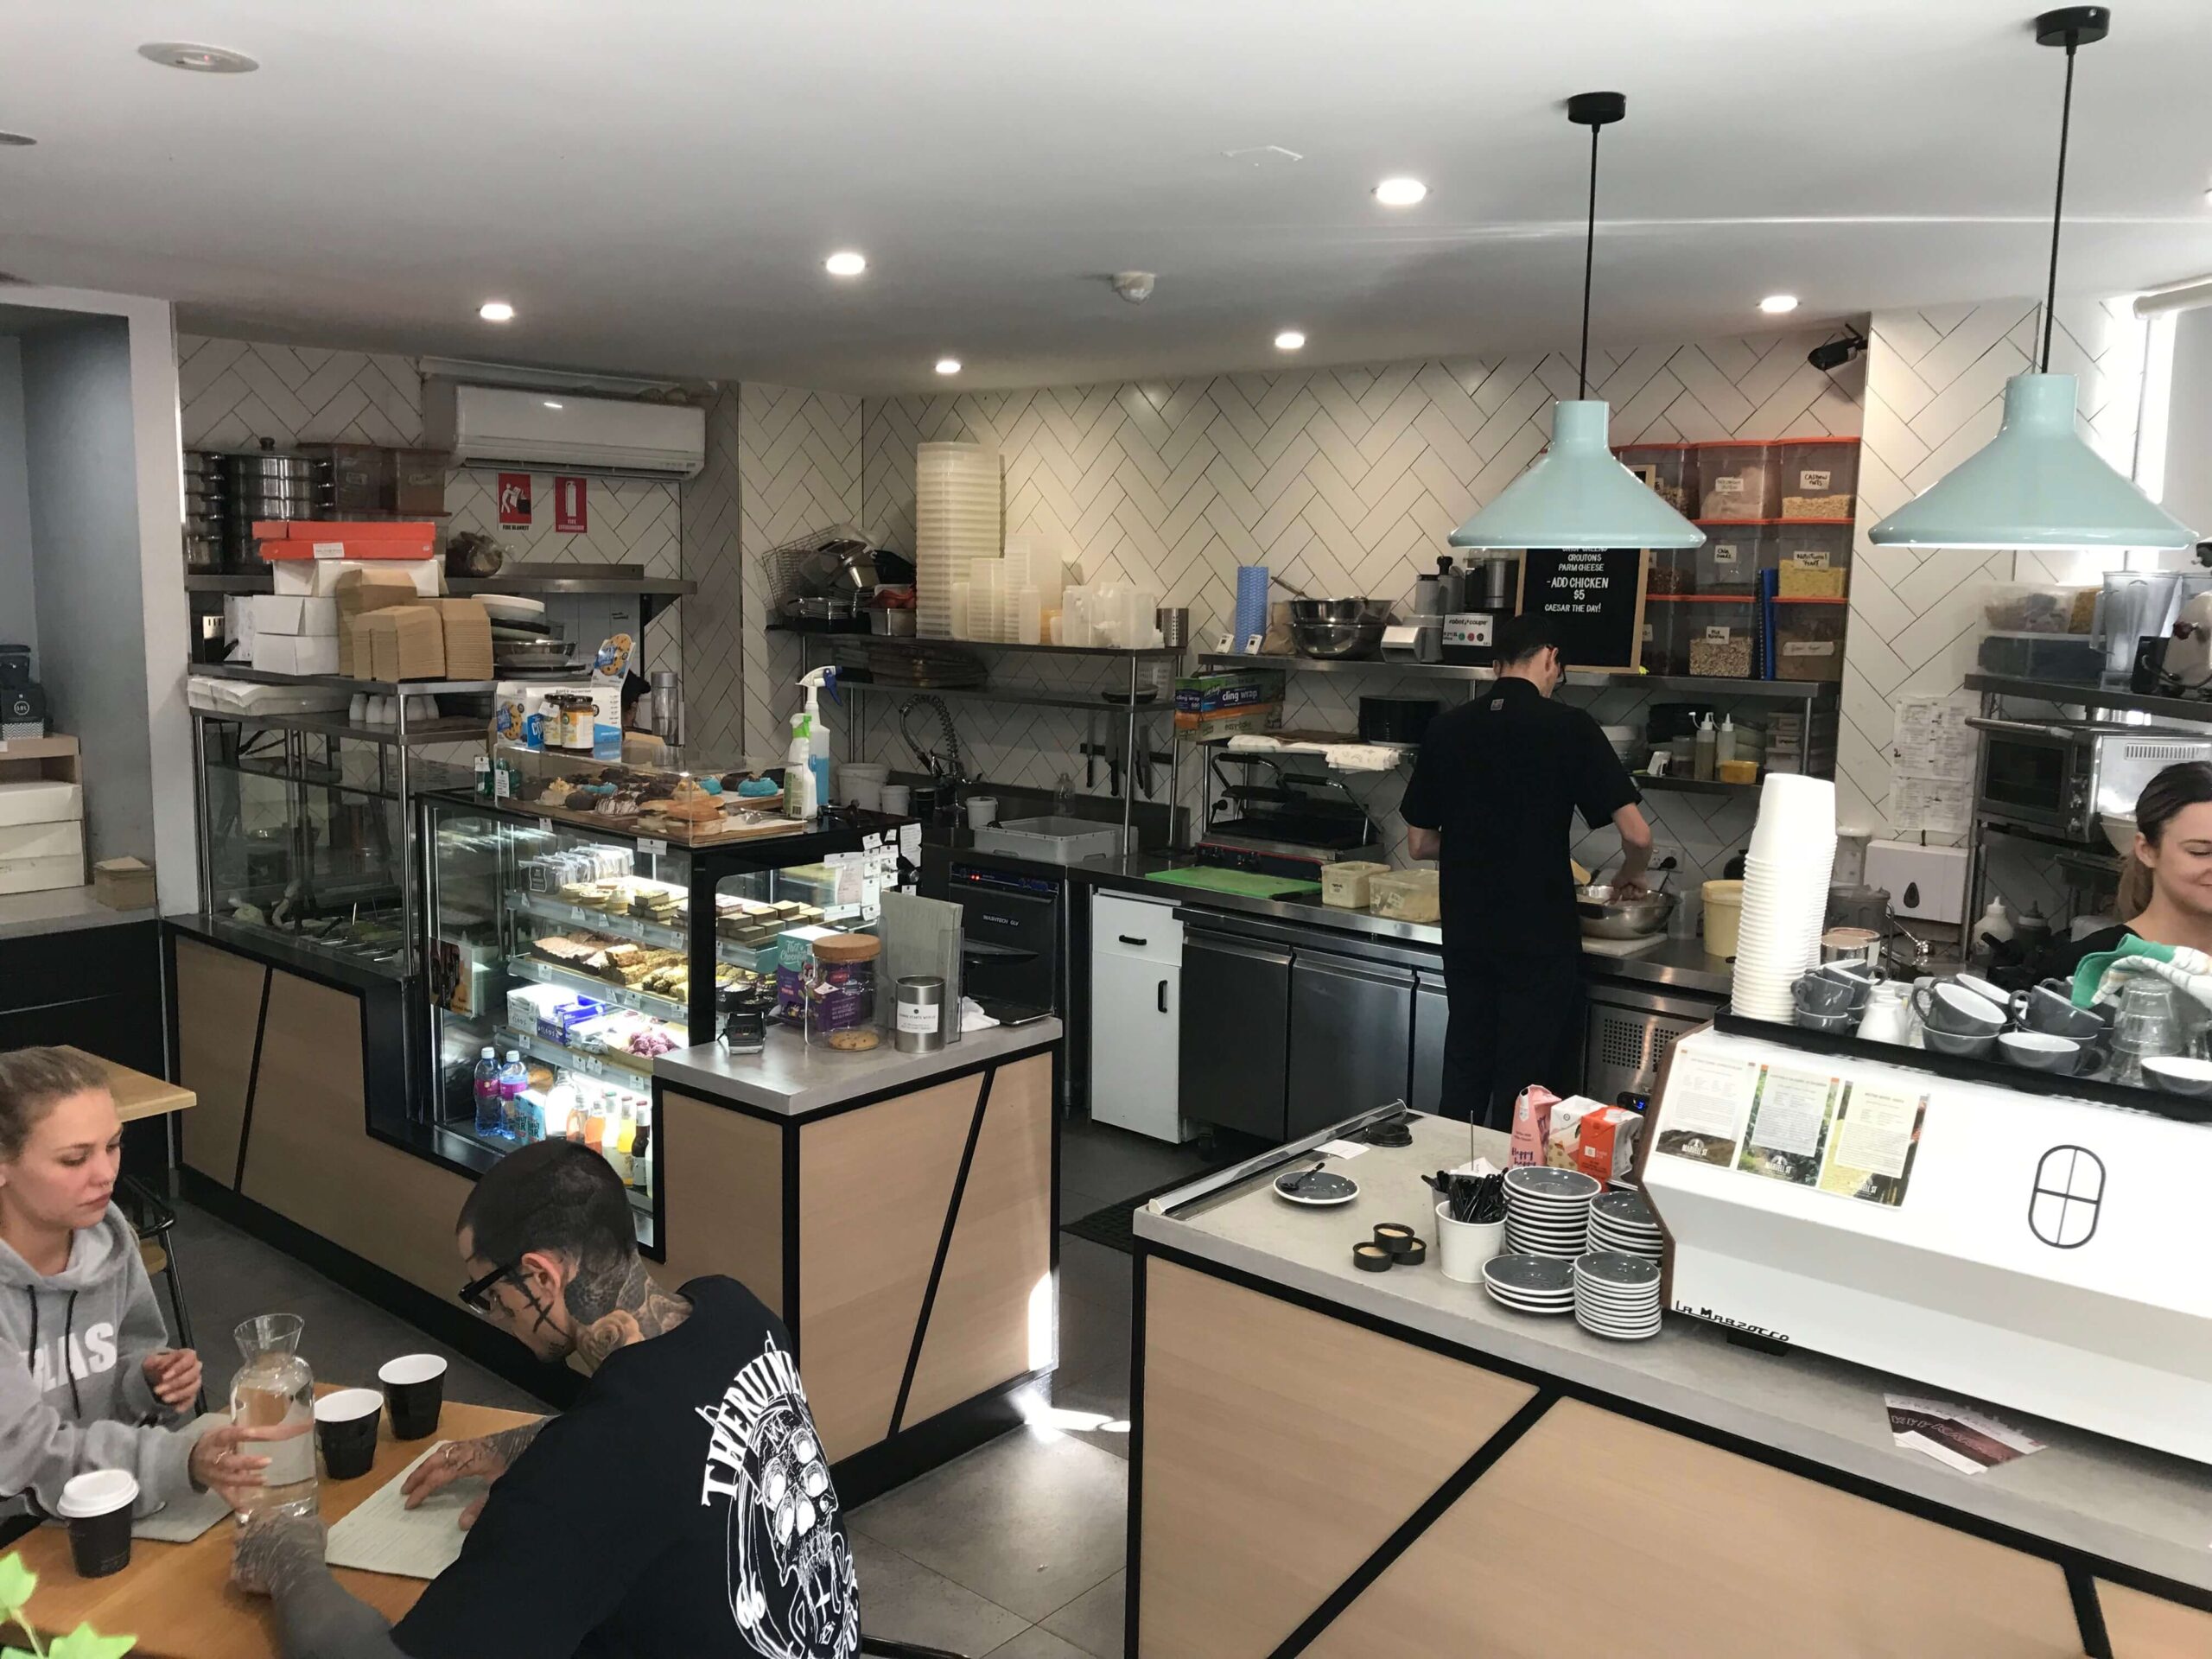 シドニーのカフェ【Shift Eatery】の店内の様子を撮影した写真